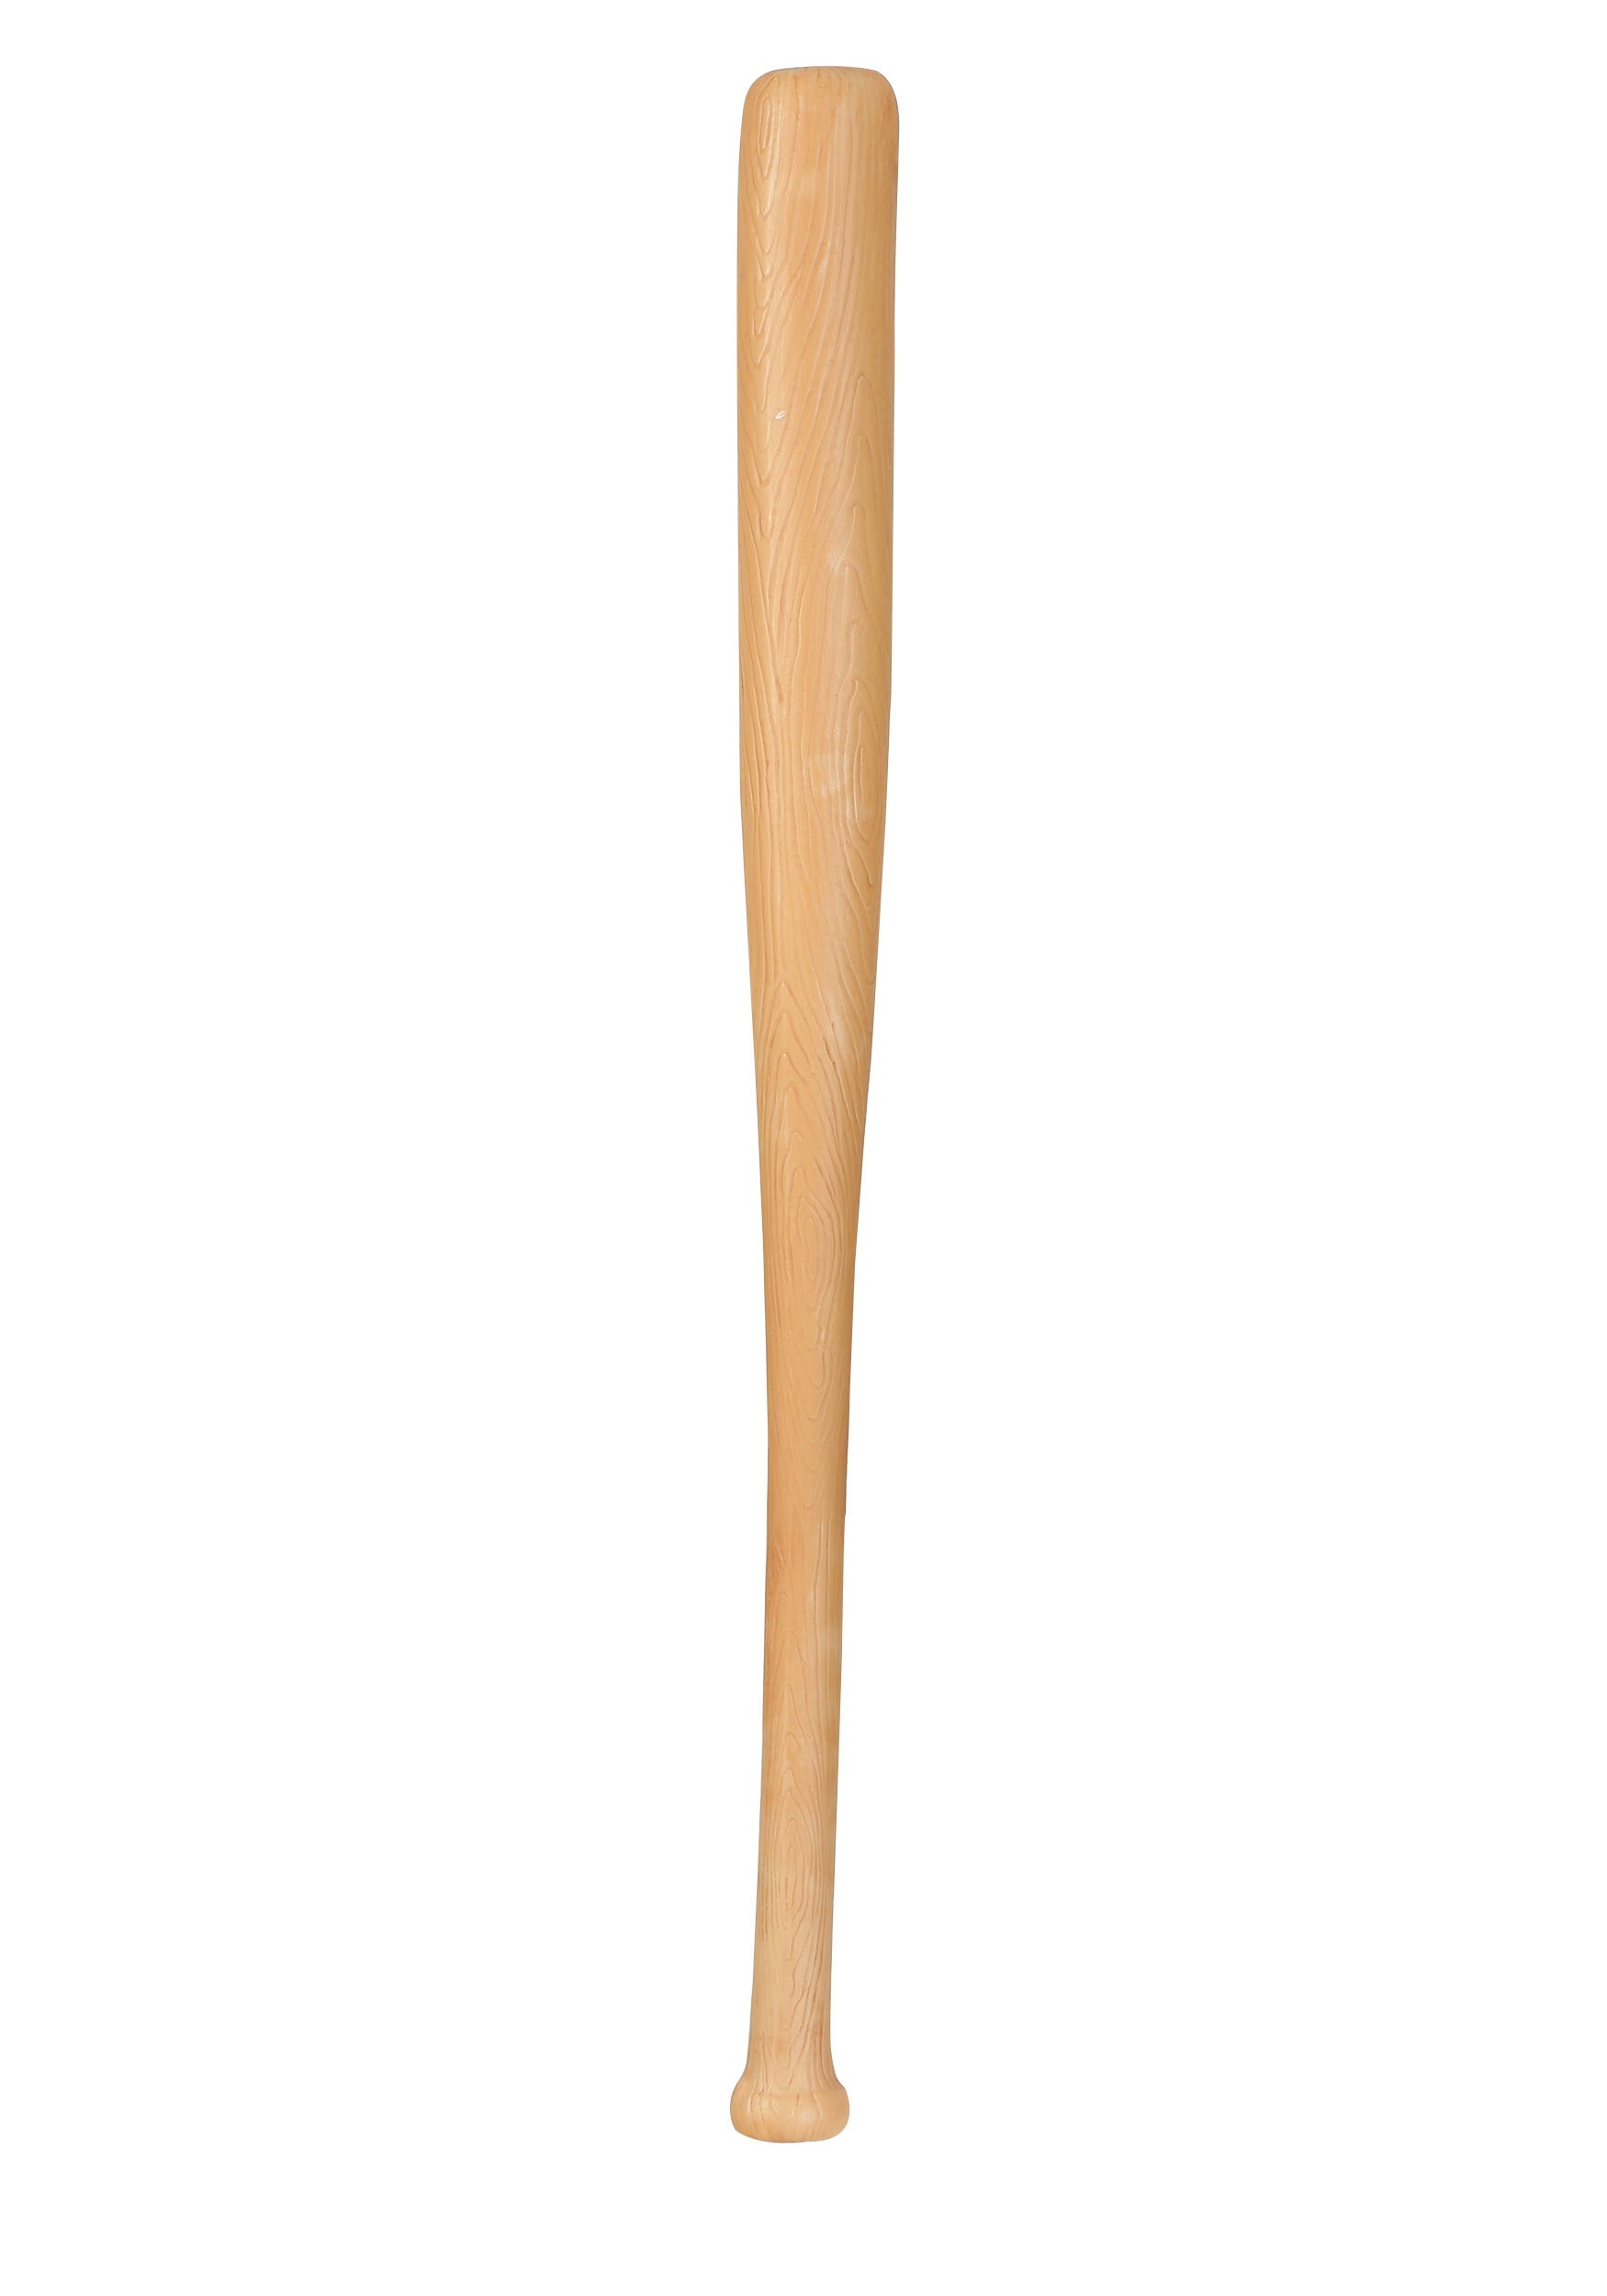 Wood Look Plastic Baseball Bat For Adults